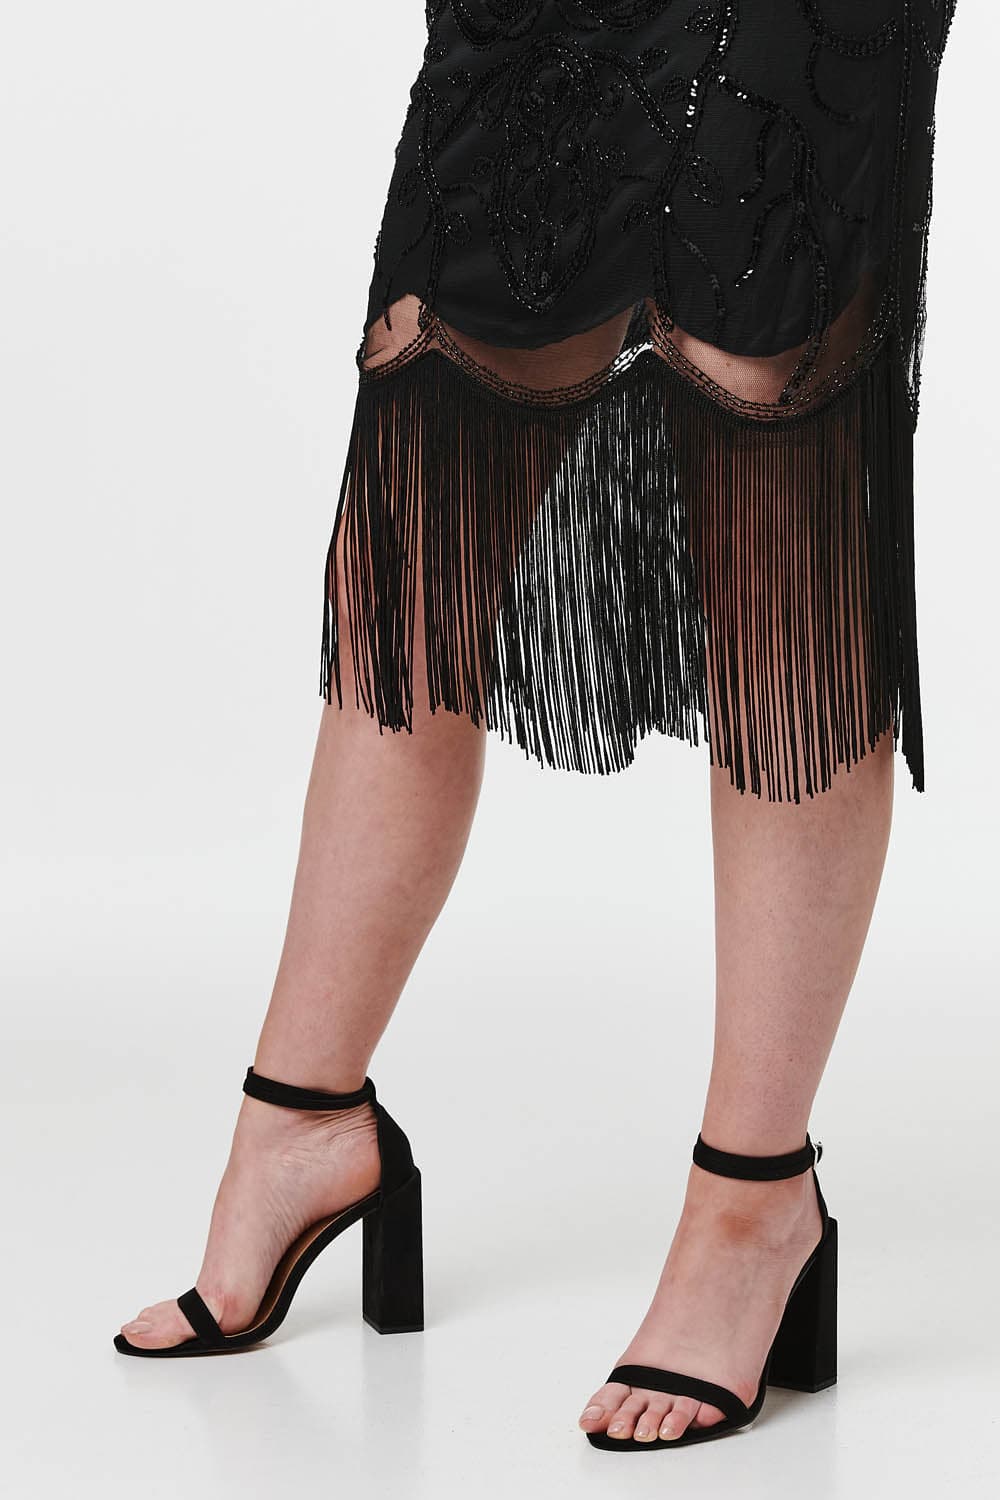 Black | Sequin Embellished Slip Dress